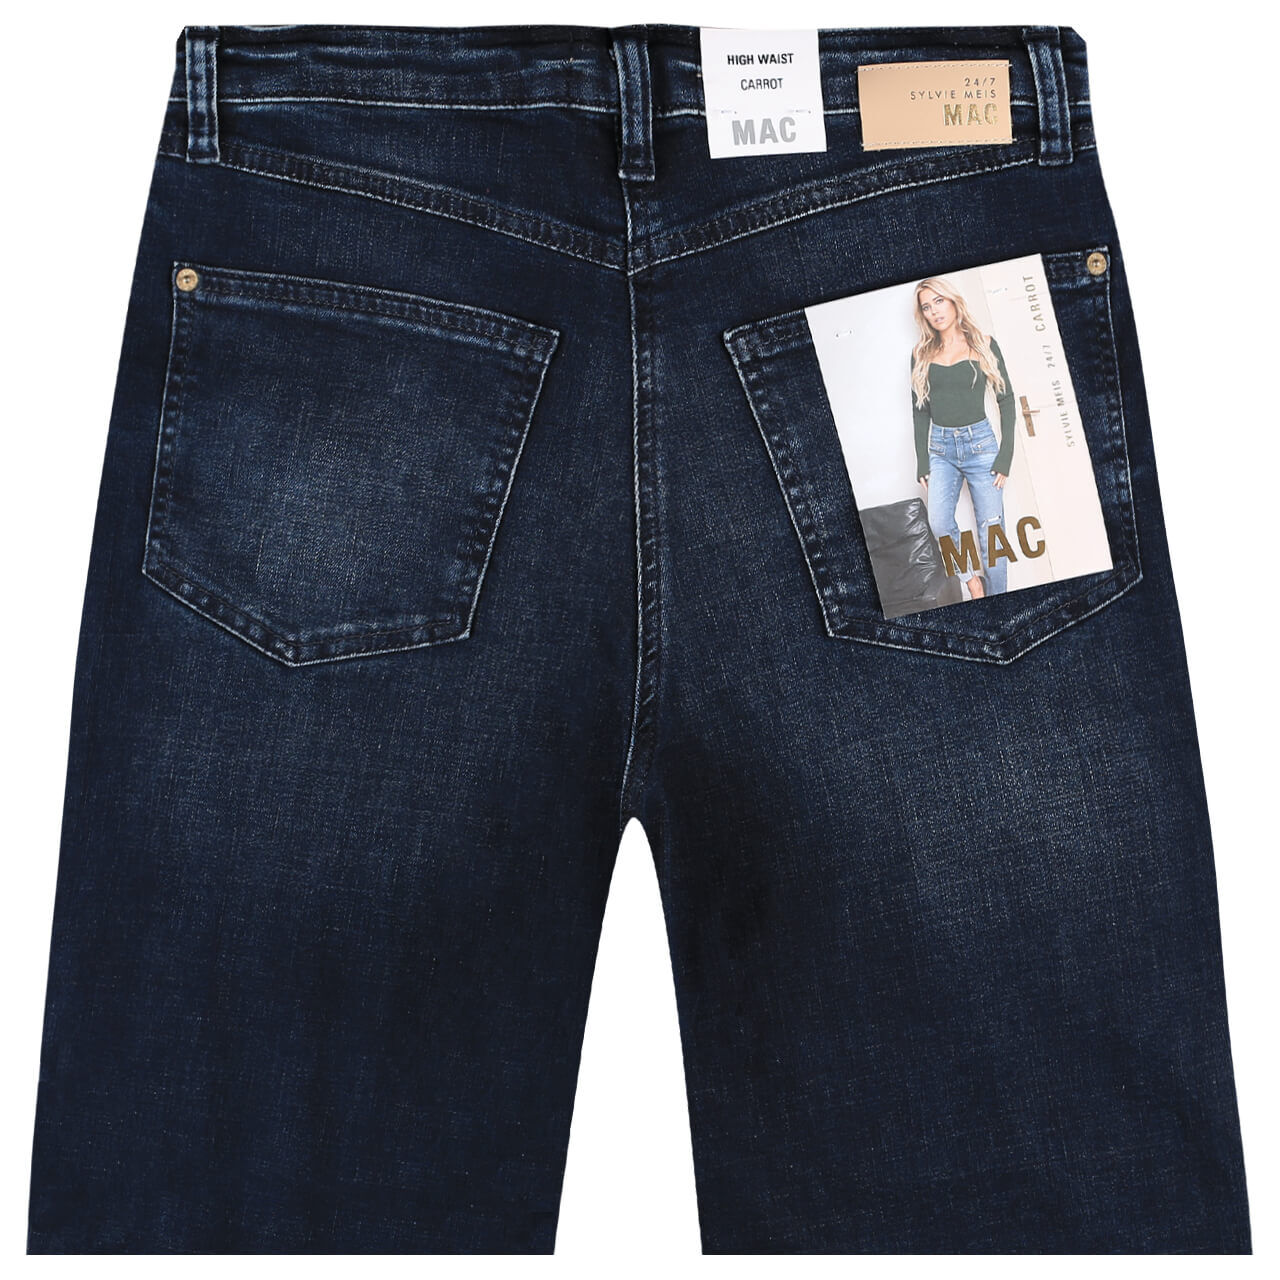 MAC Jeans Rich Carrot 7/8 für Damen in Dunkelblau angewaschen, FarbNr.: D892